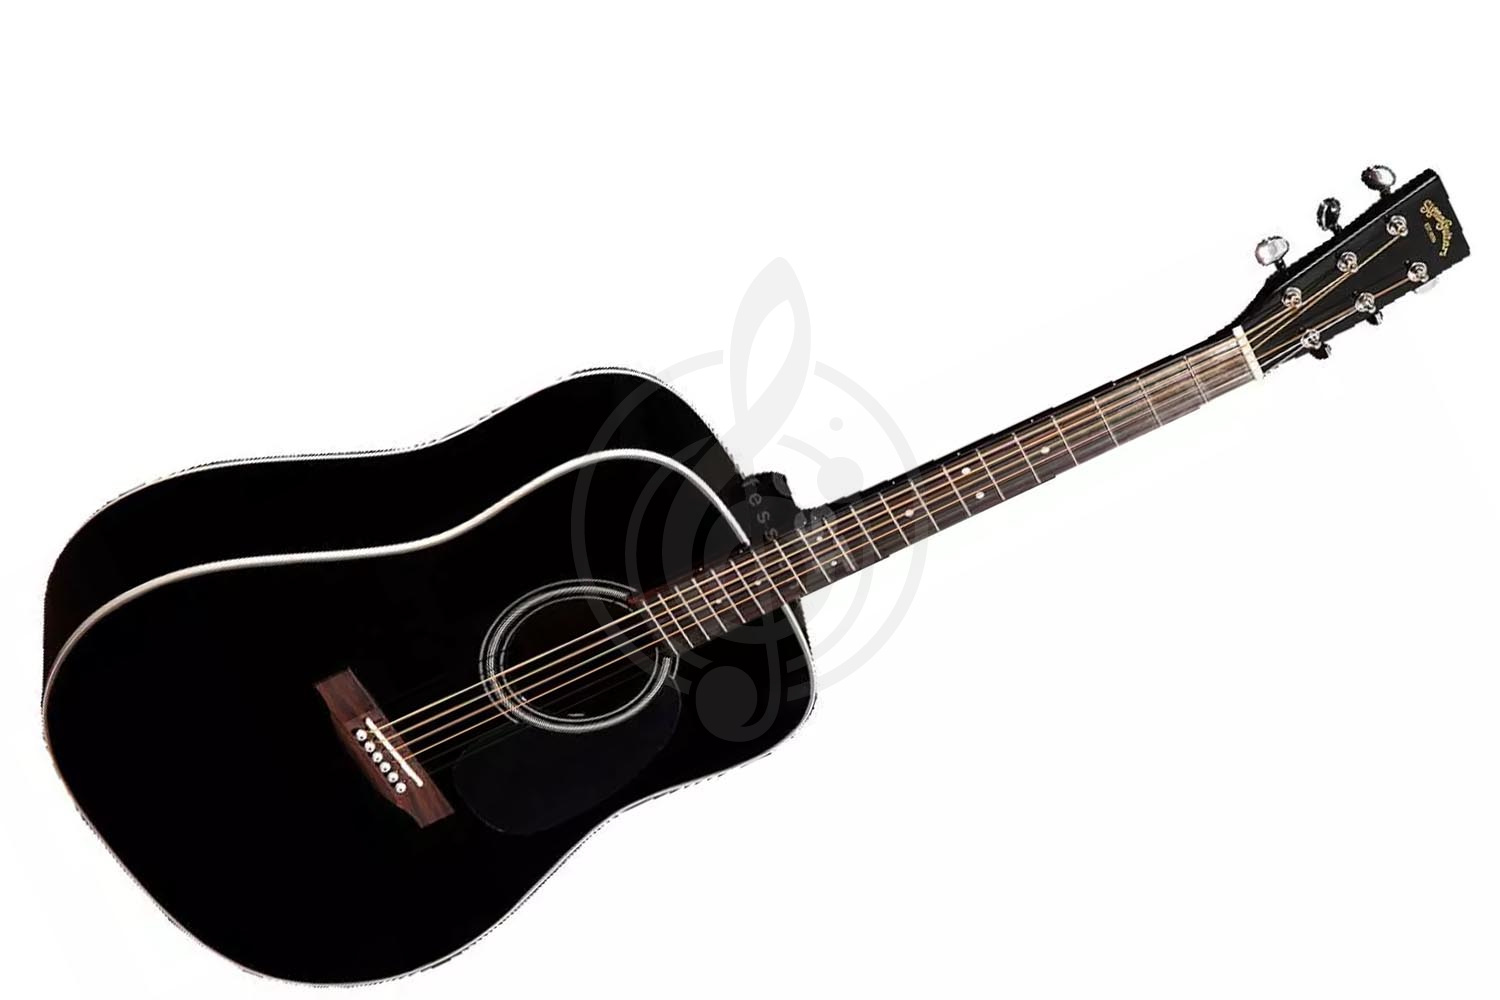 Акустическая гитара Акустические гитары Sigma Sigma DM-1ST-BK+ - акустическая гитара DM-1ST-BK+ - фото 1